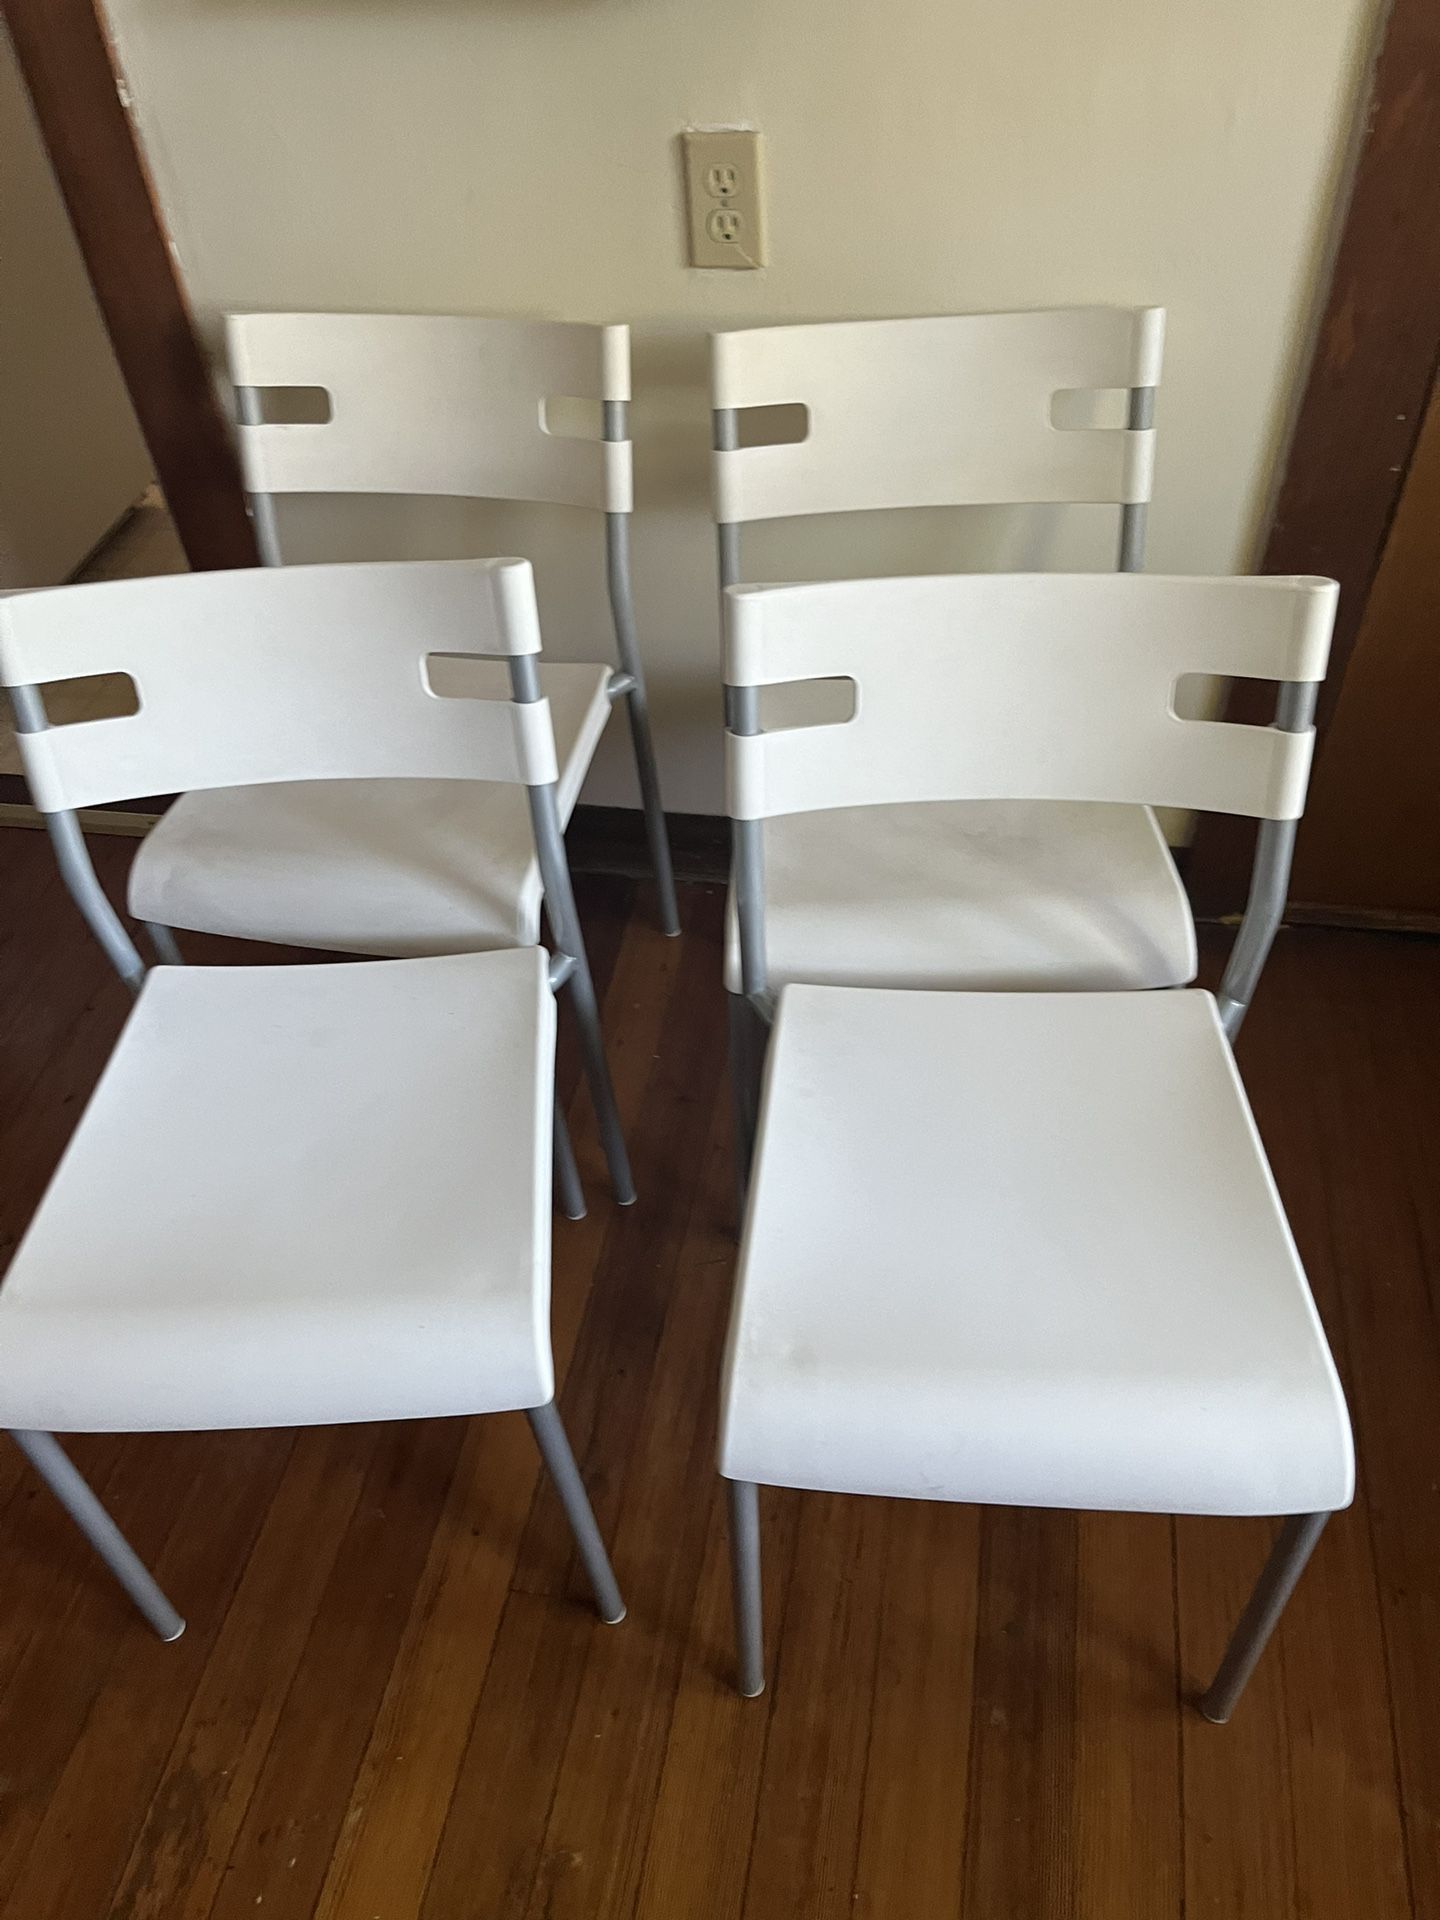 4 Ikea Chairs